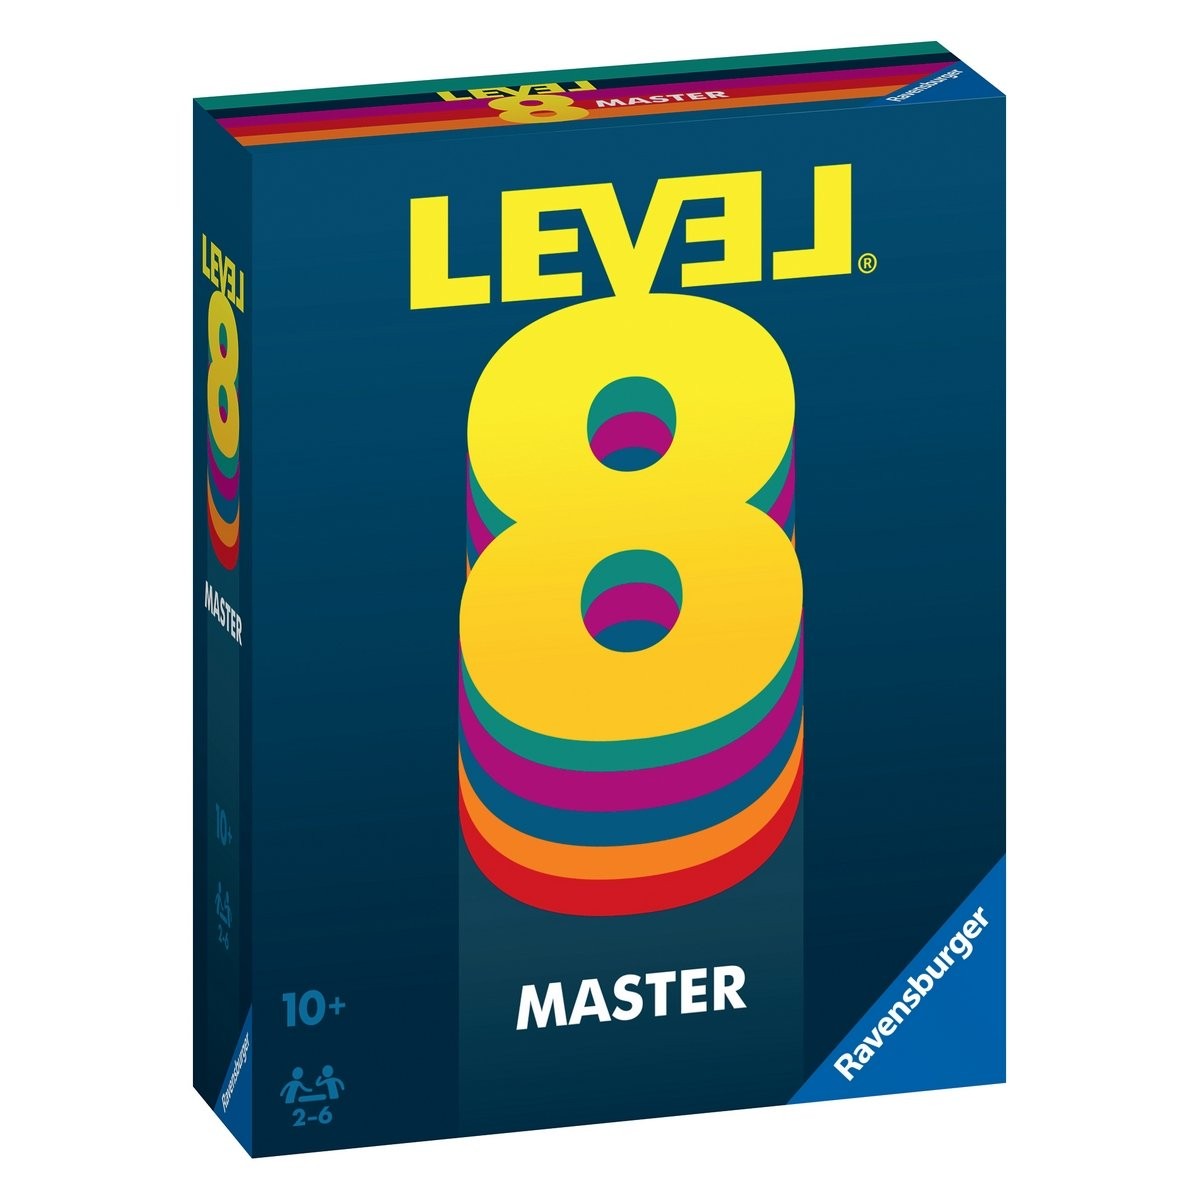 Level 8 - nouvelle édition - La Grande Récré